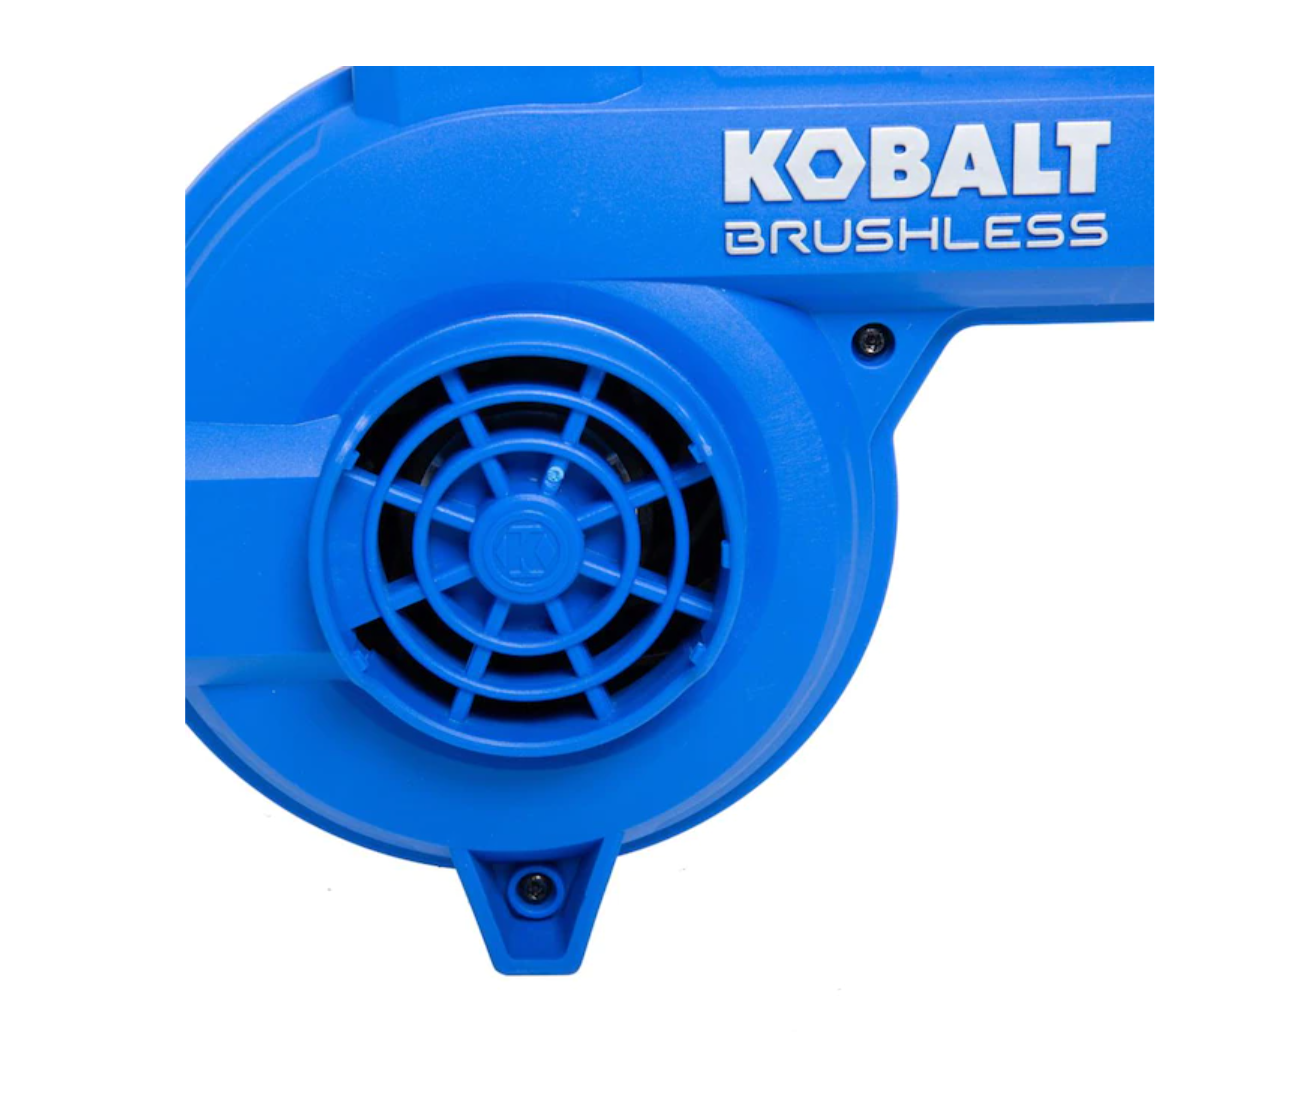 Kobalt 24-volt Jobsite Blower (Tool Only) in the Jobsite Blowers